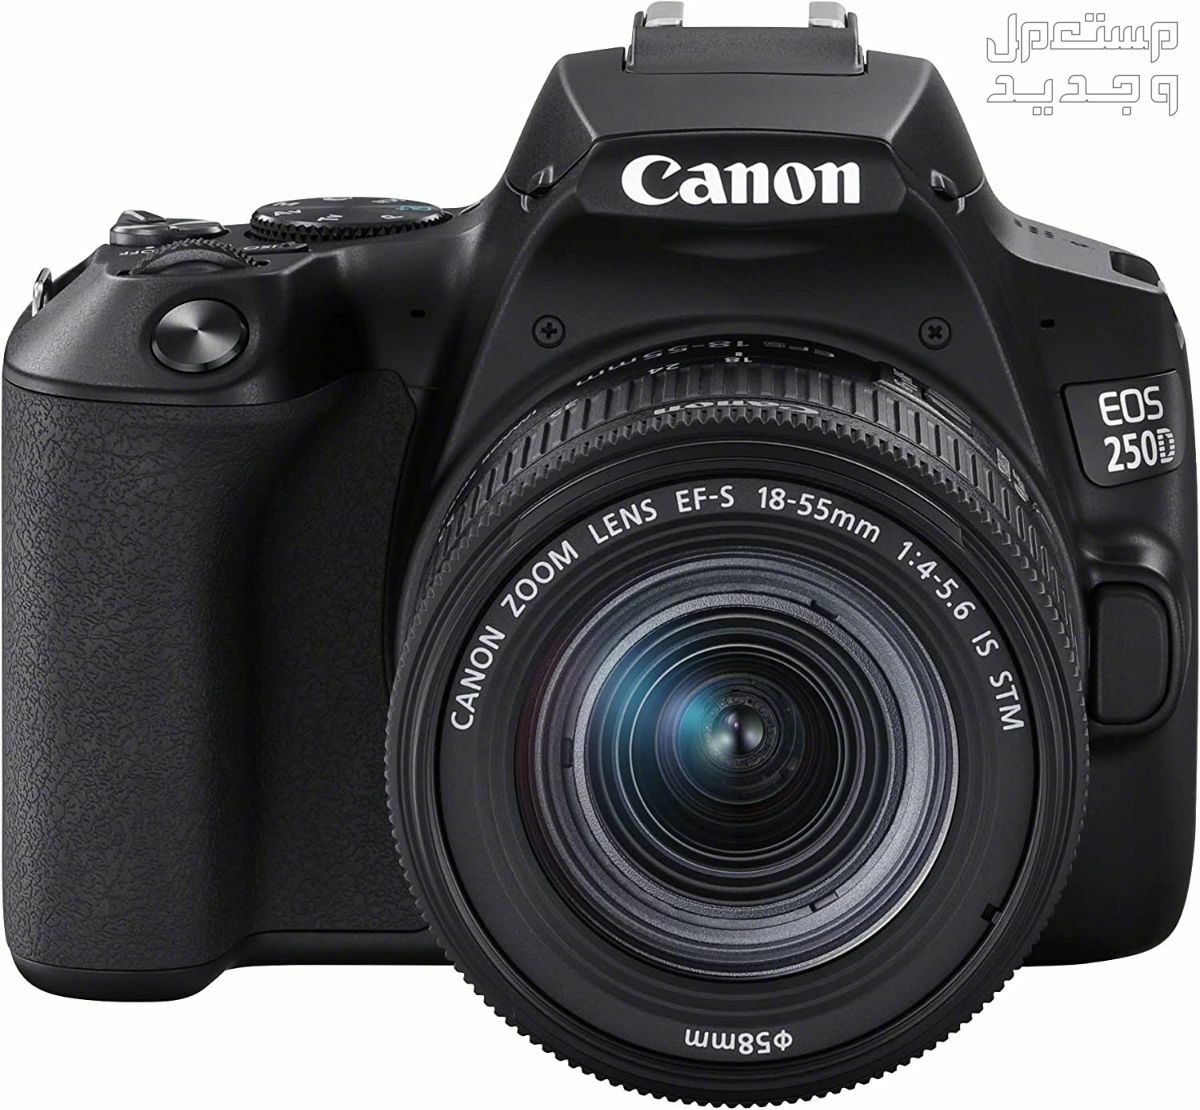 سعر ومميزات ومواصفات أرخص 5 كاميرات تصوير من كانون مميزات كاميرا Canon EOS 250D